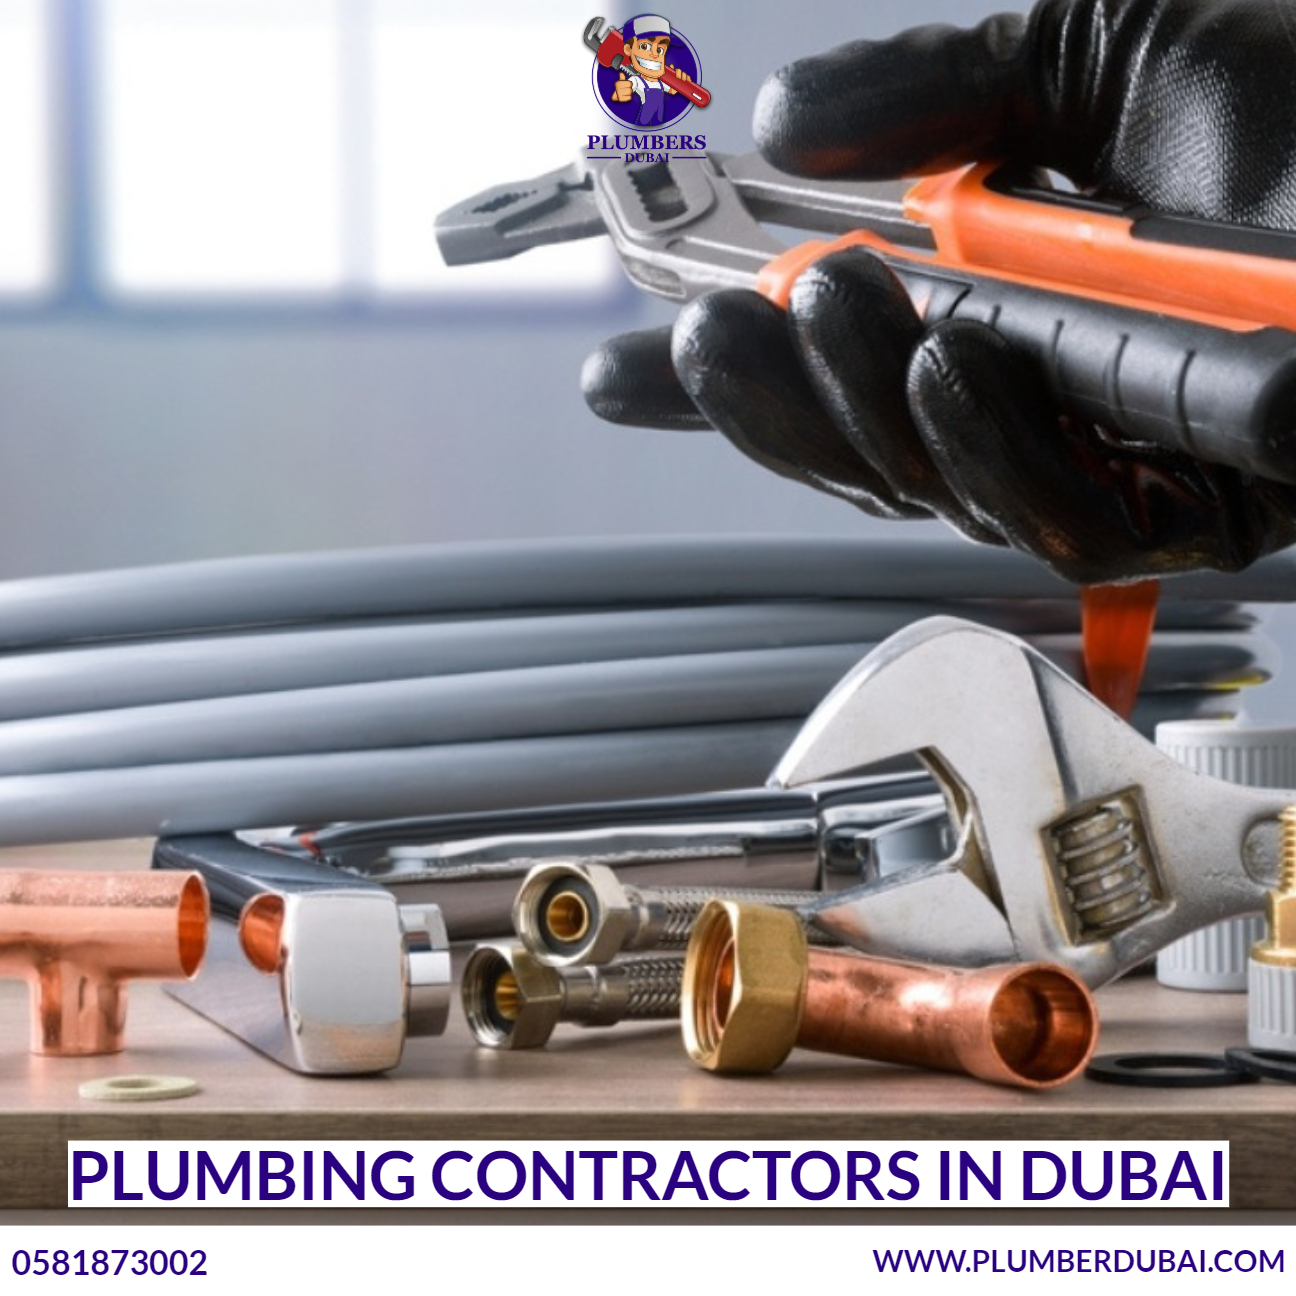 Plumbing Contractors in Dubai